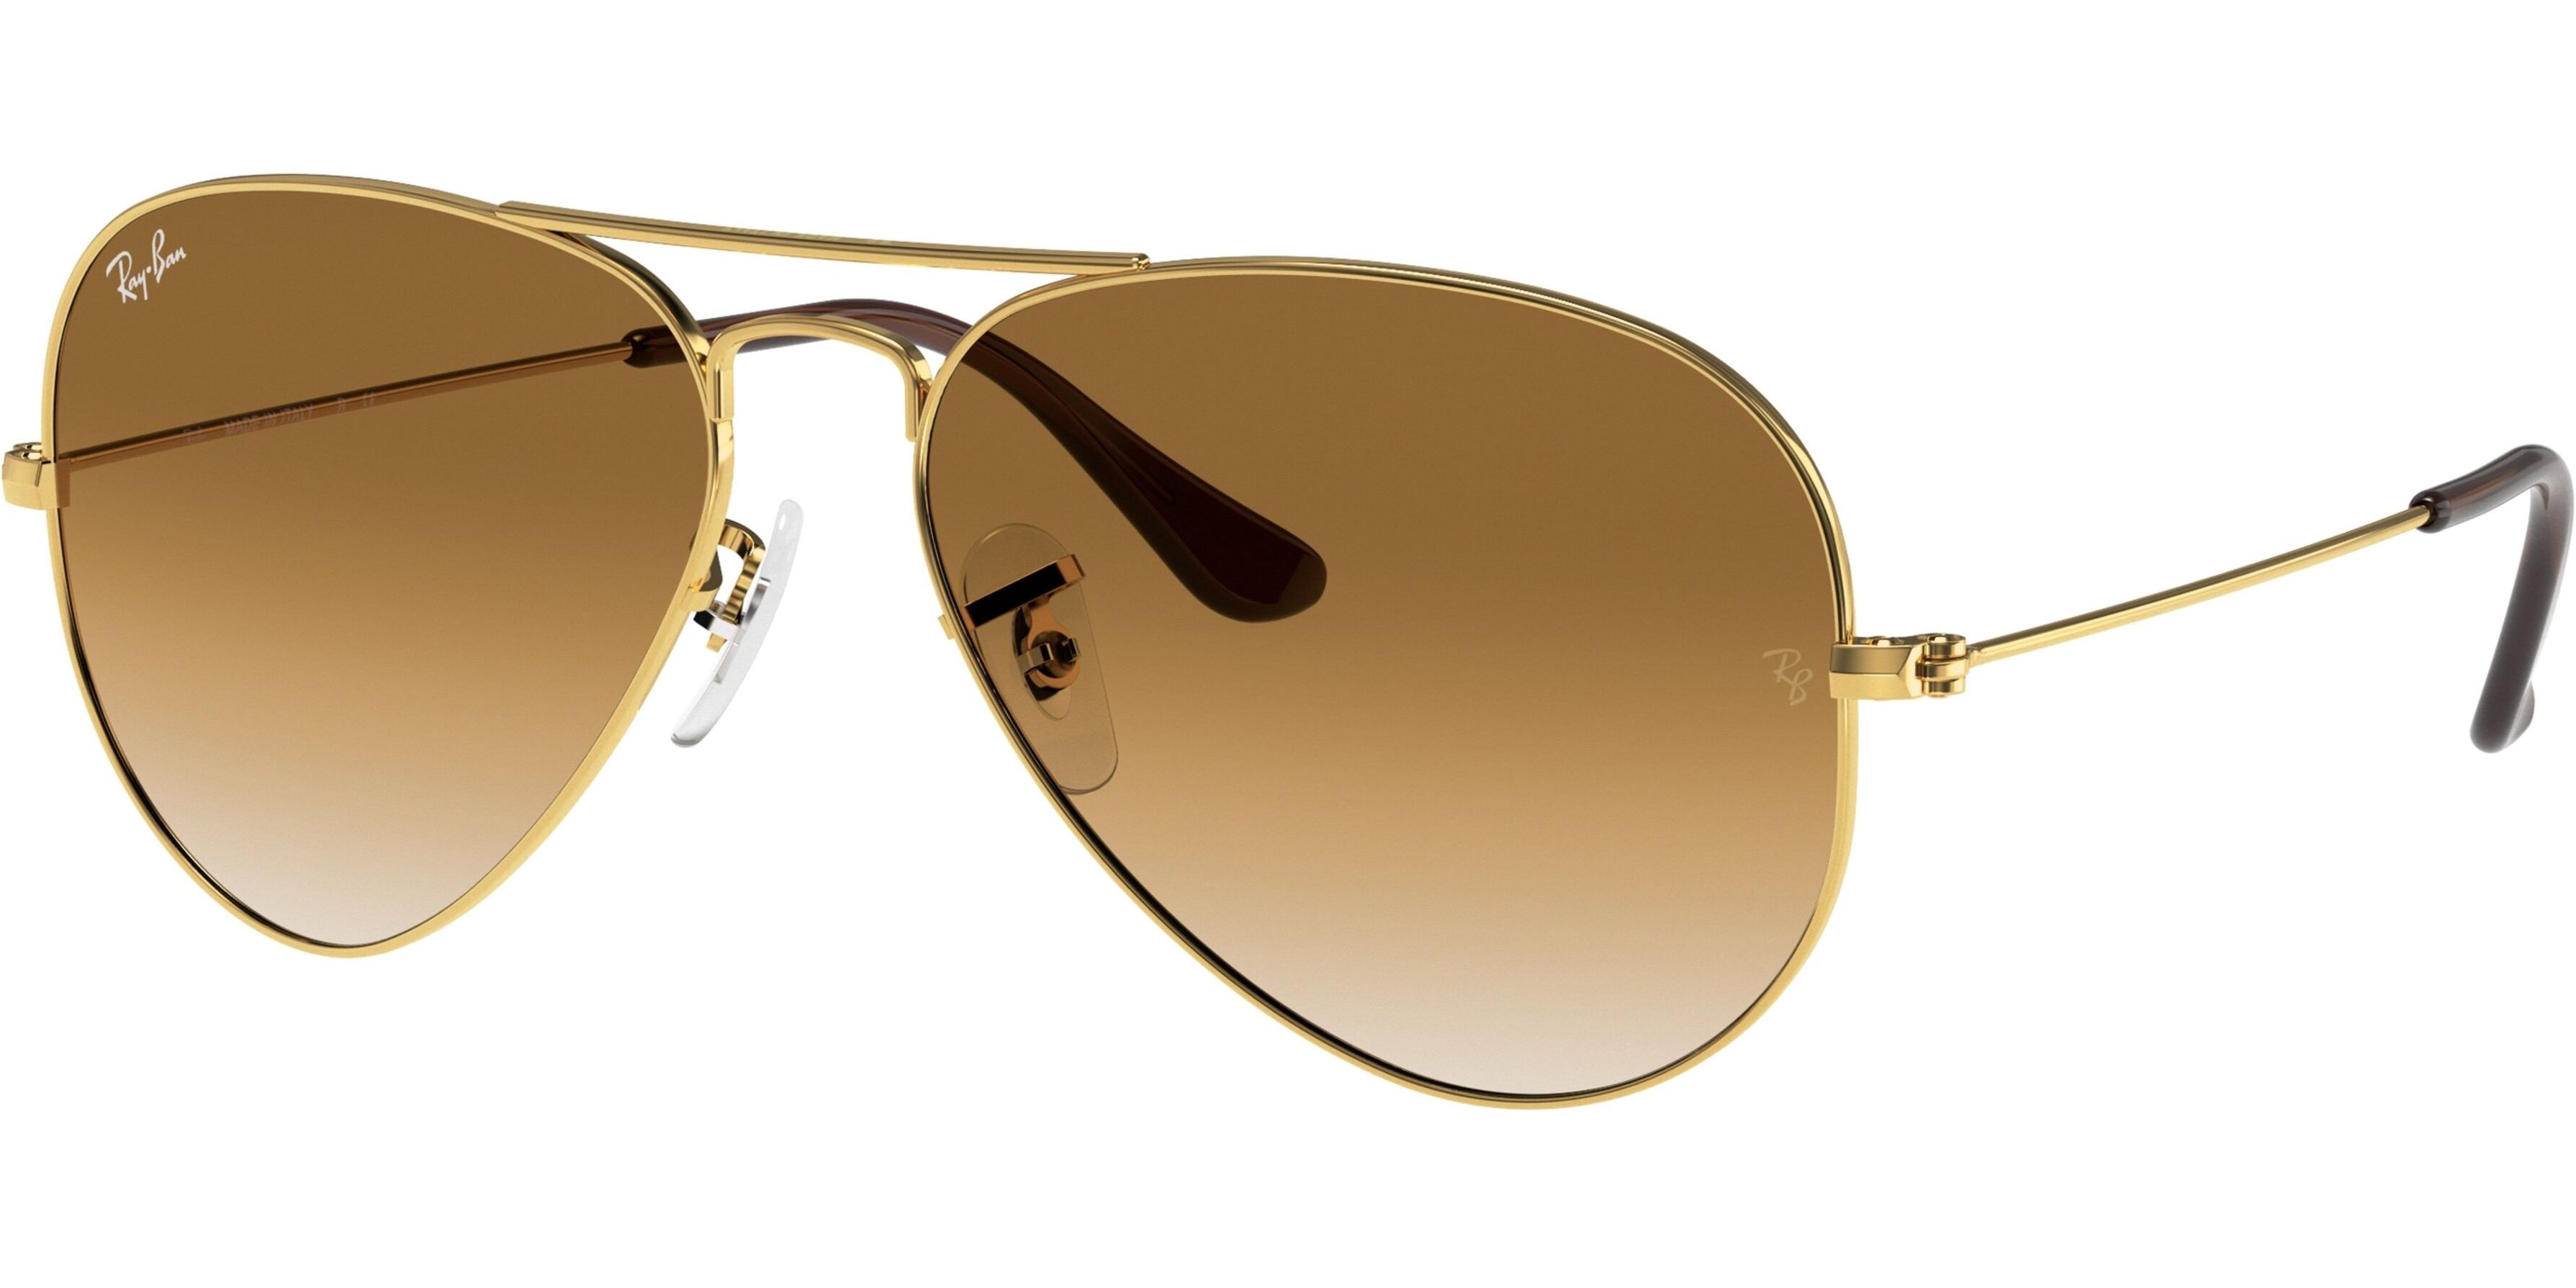 Sluneční brýle Ray-Ban® model 3025, barva obruby zlatá lesk, čočka hnědá gradál, kód barevné varianty 00151. 